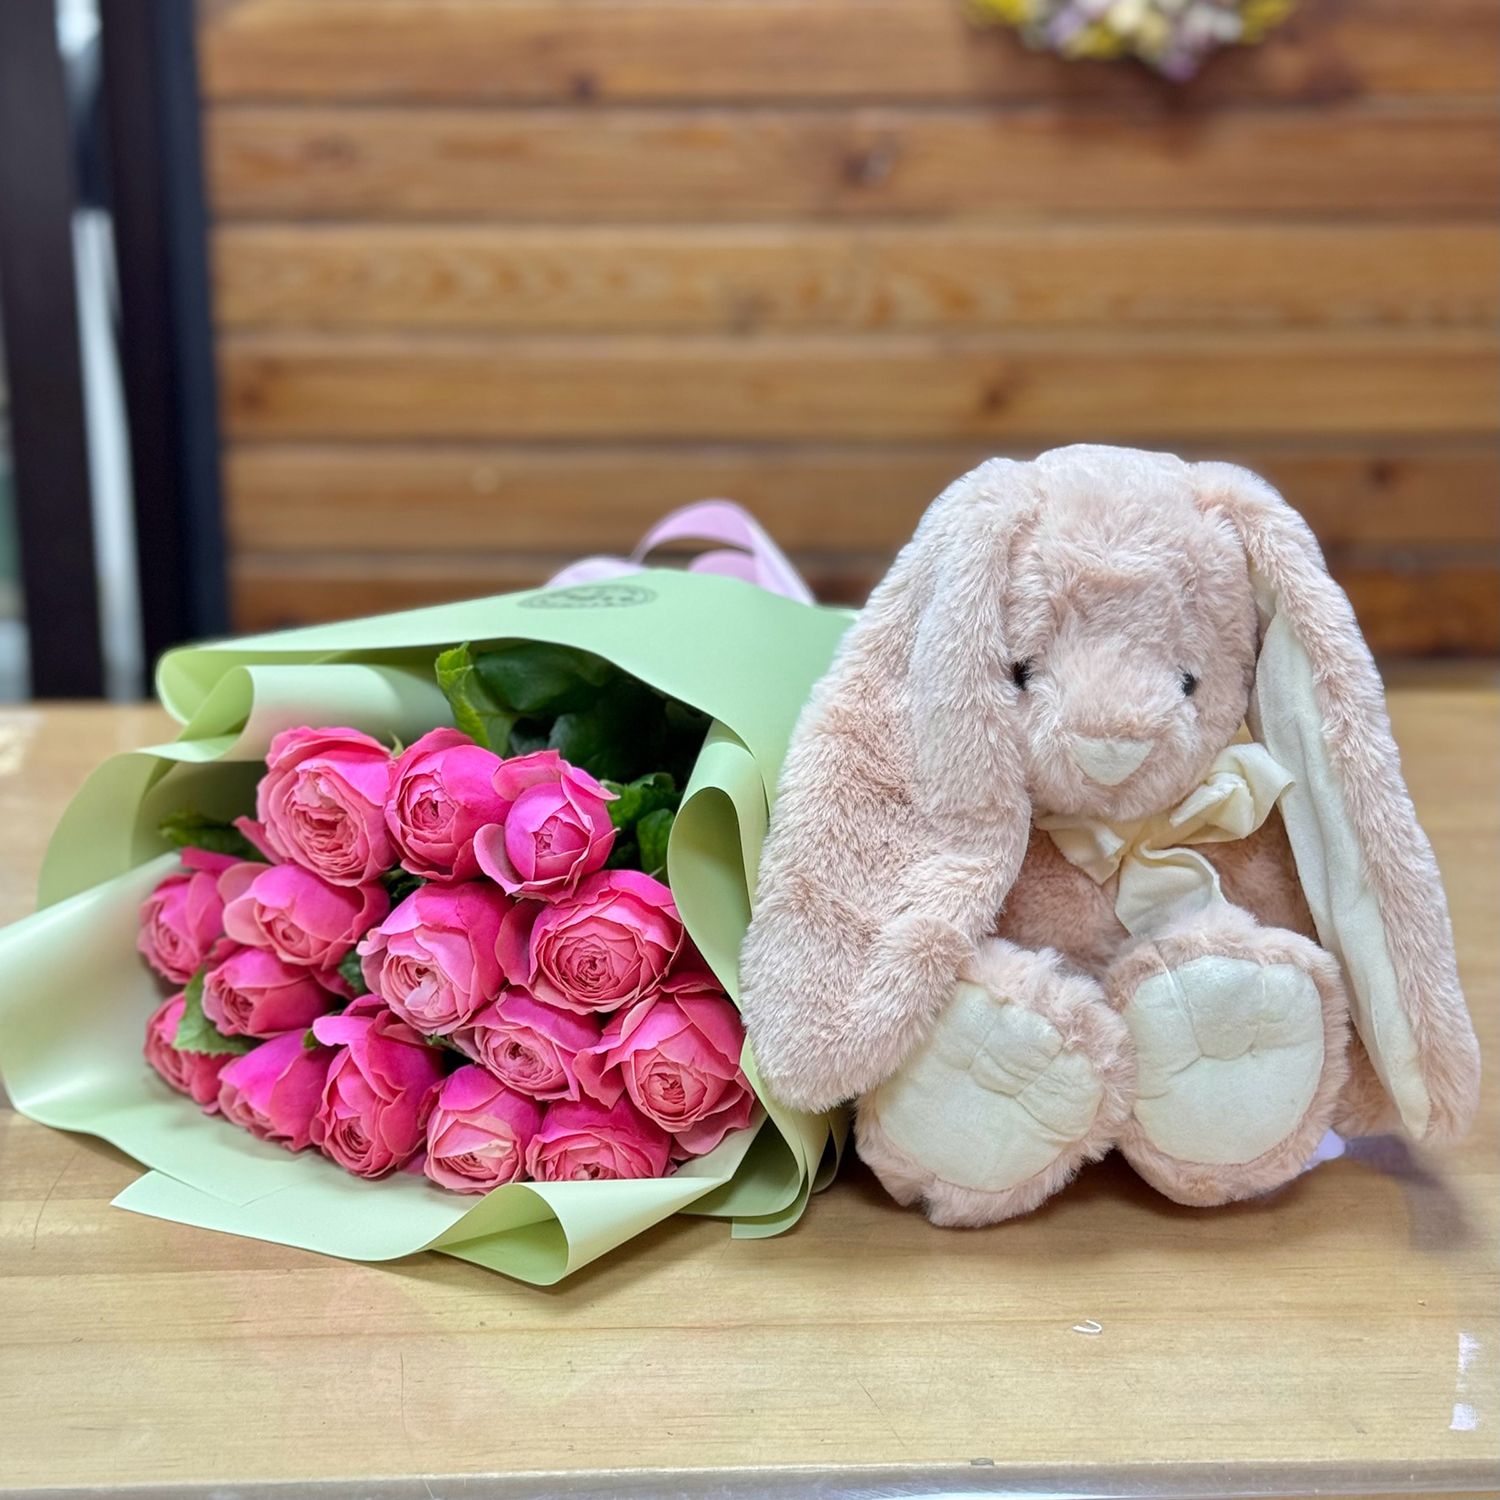 Pink roses and a bunny Pink roses and a bunny